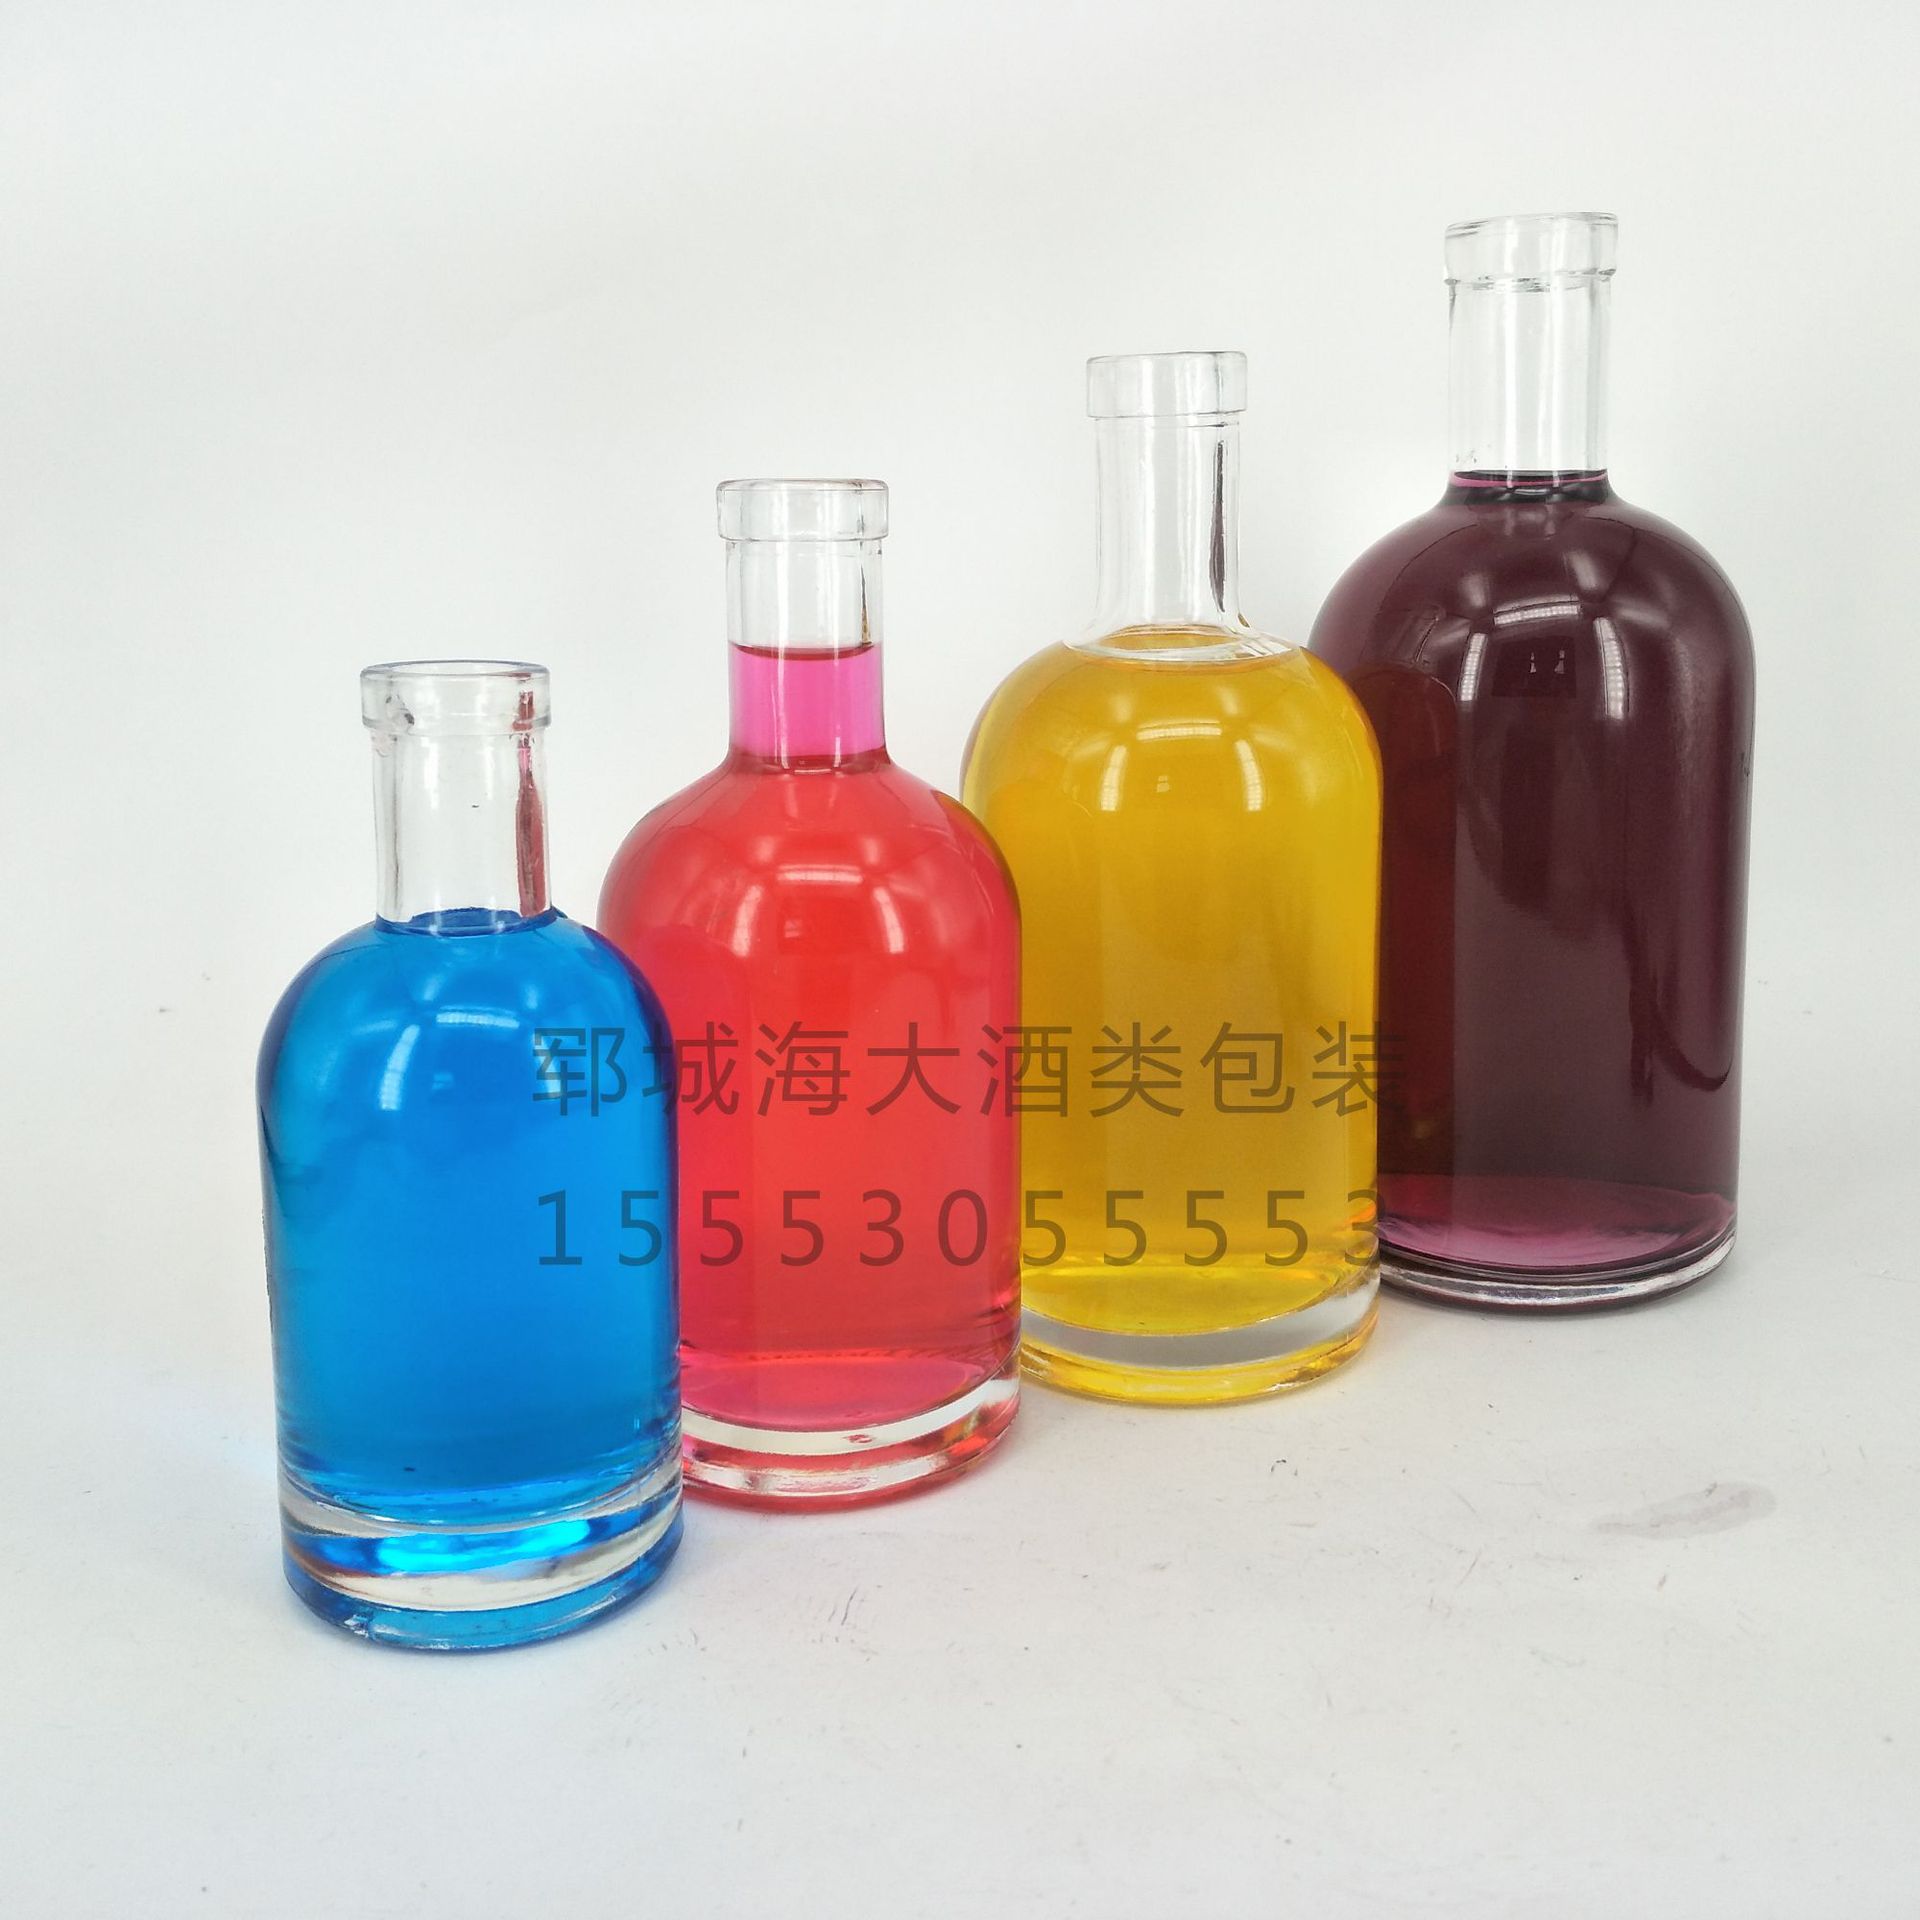 高档 330ml果酒瓶 晶白料 冰酒玻璃瓶375ml 酵素酒瓶 果酒玻璃瓶示例图6